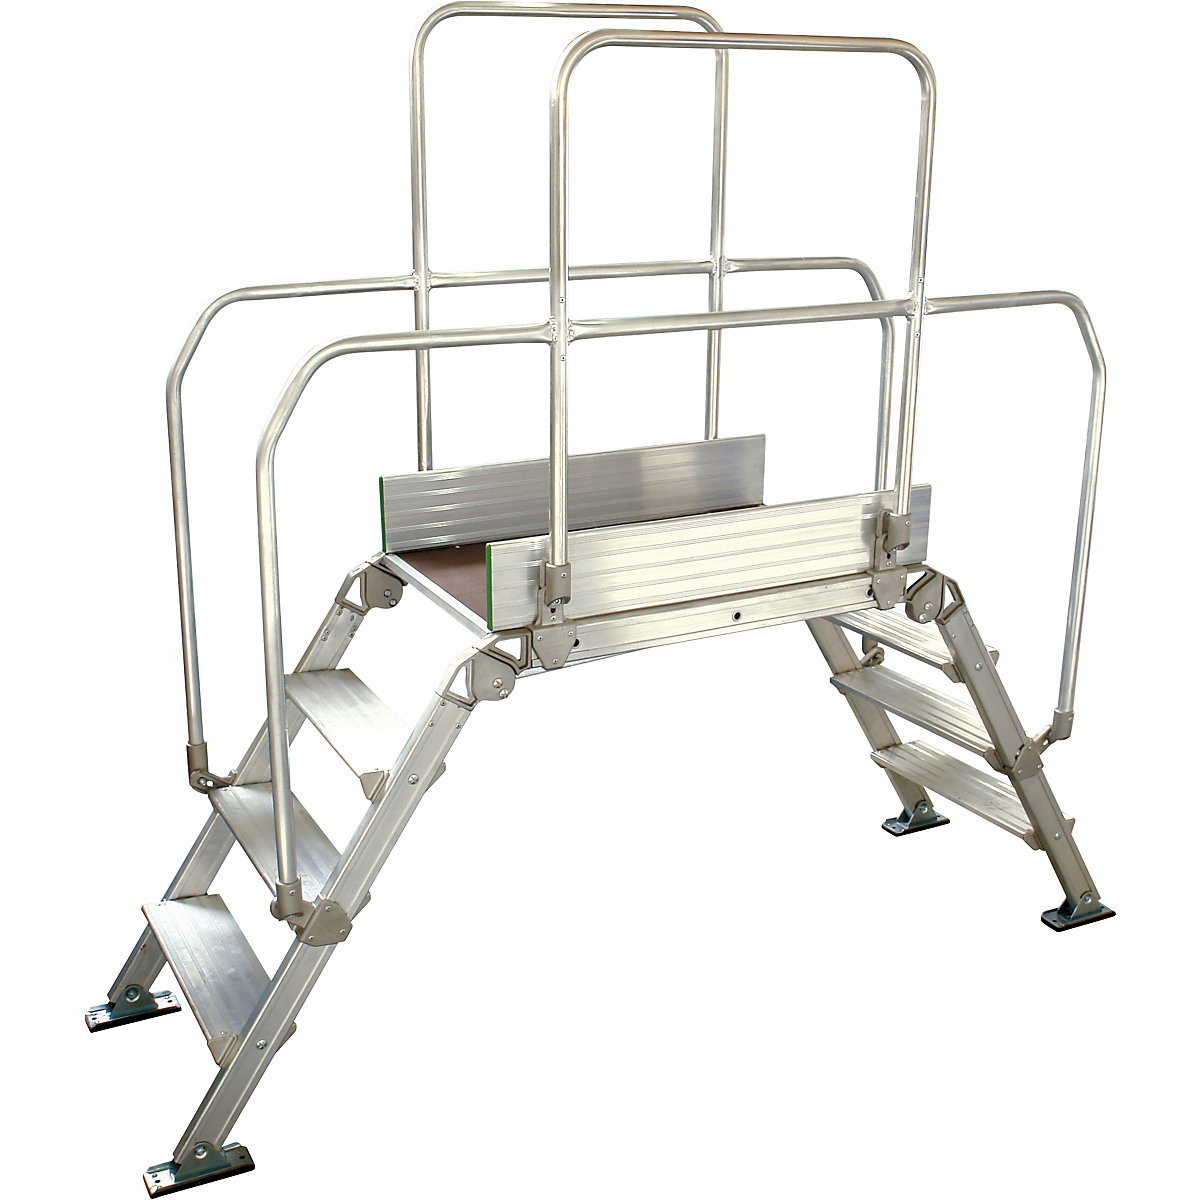 Aluminium ladderbrug, totale belasting 200 kg, 4 treden, platform 900 x 530 mm-13